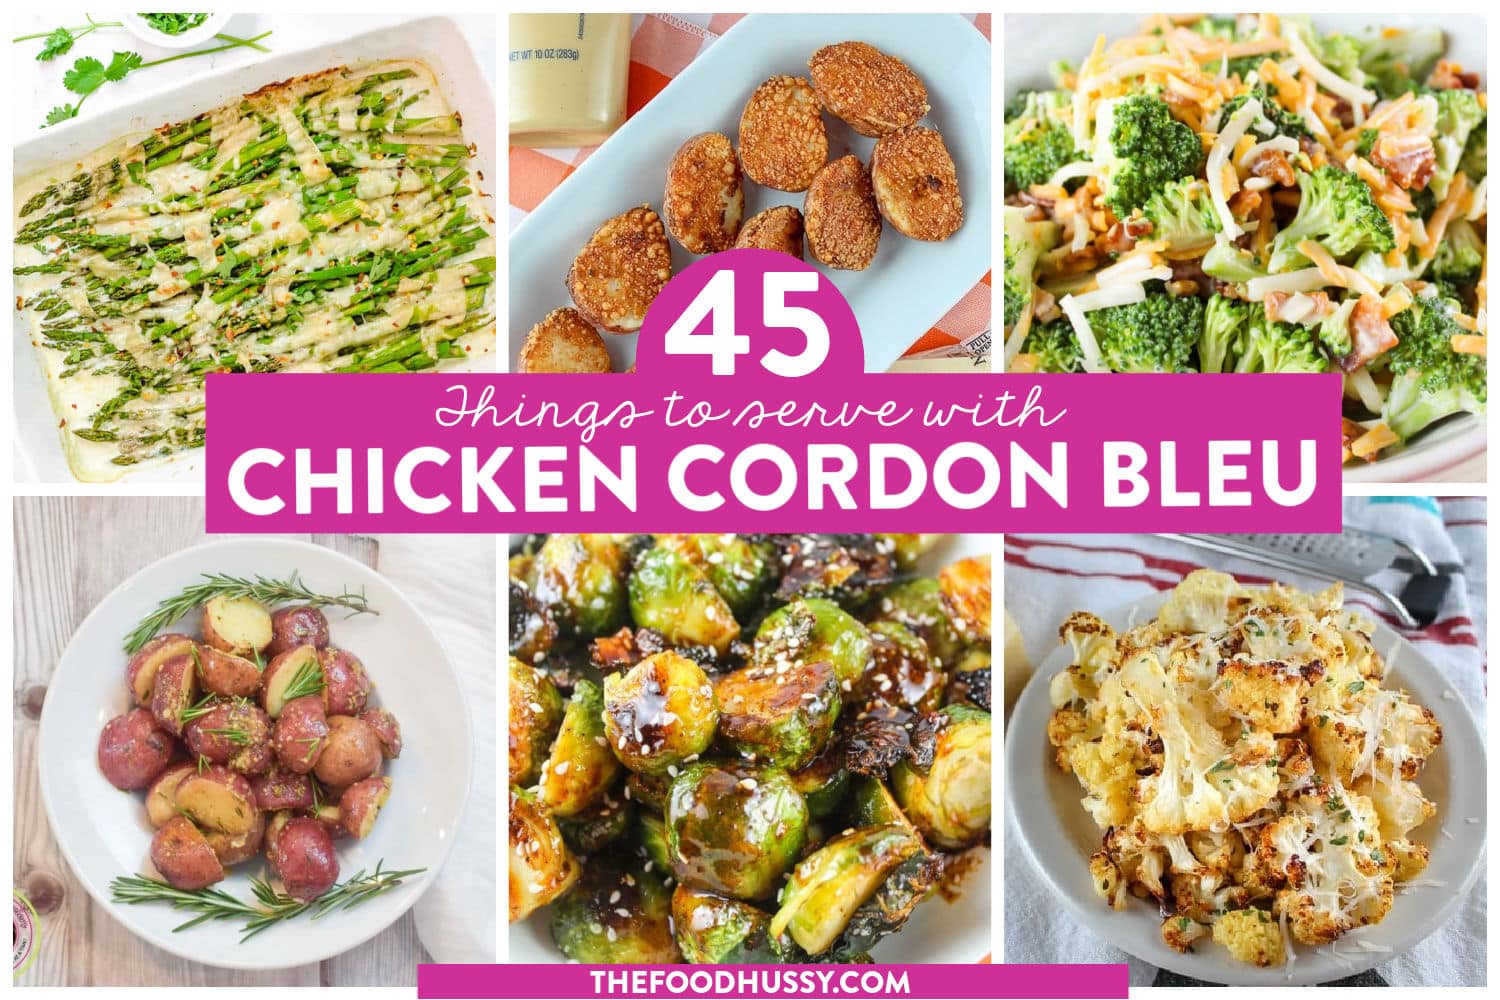 Dutch Oven Chicken Cordon Bleu Recipe: Irresistibly Delicious!